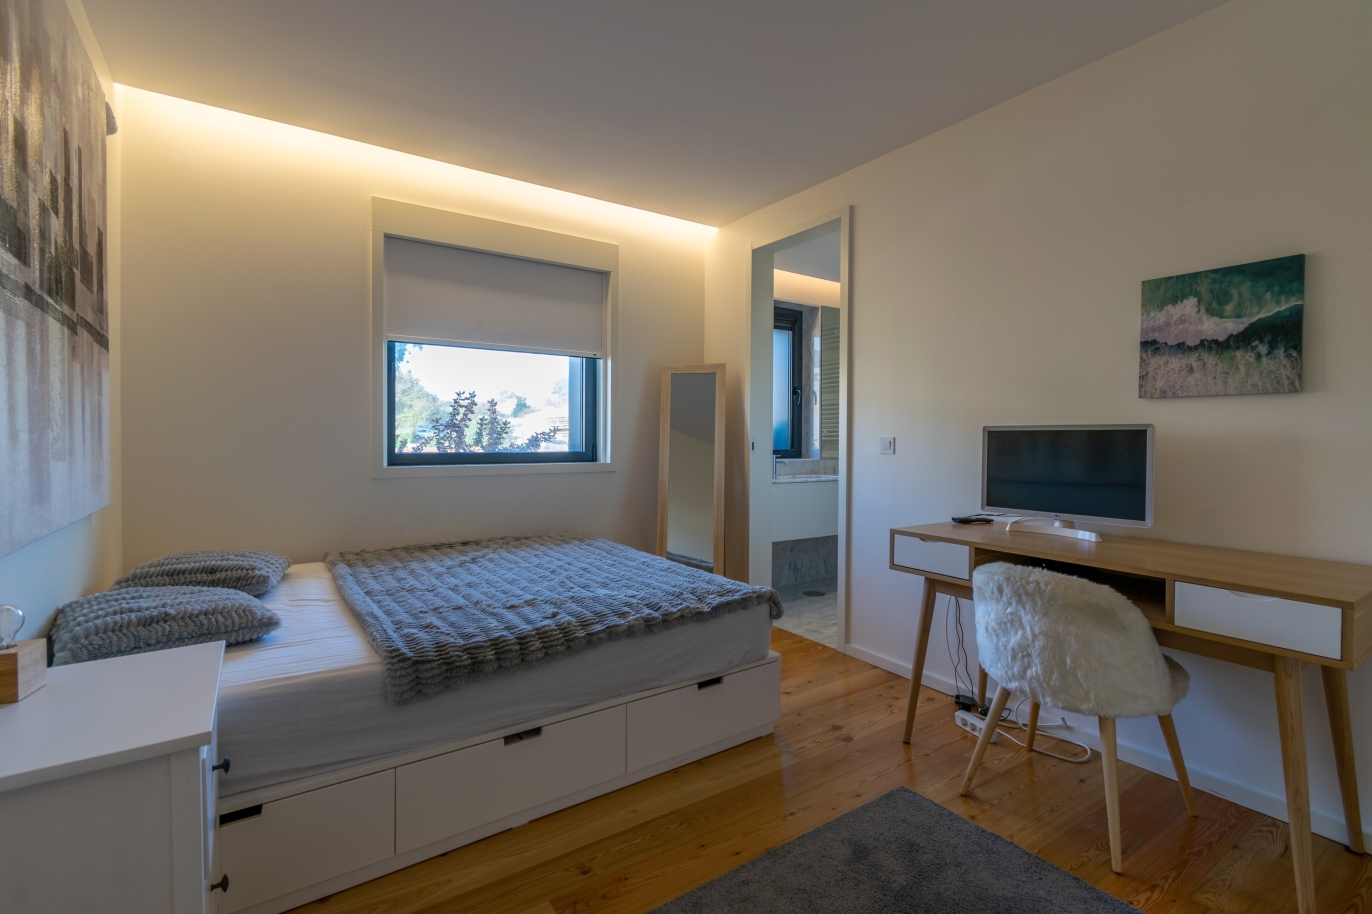 3 bedroom apartment, for sale, near Parque da Cidade, Porto, Portugal_246166